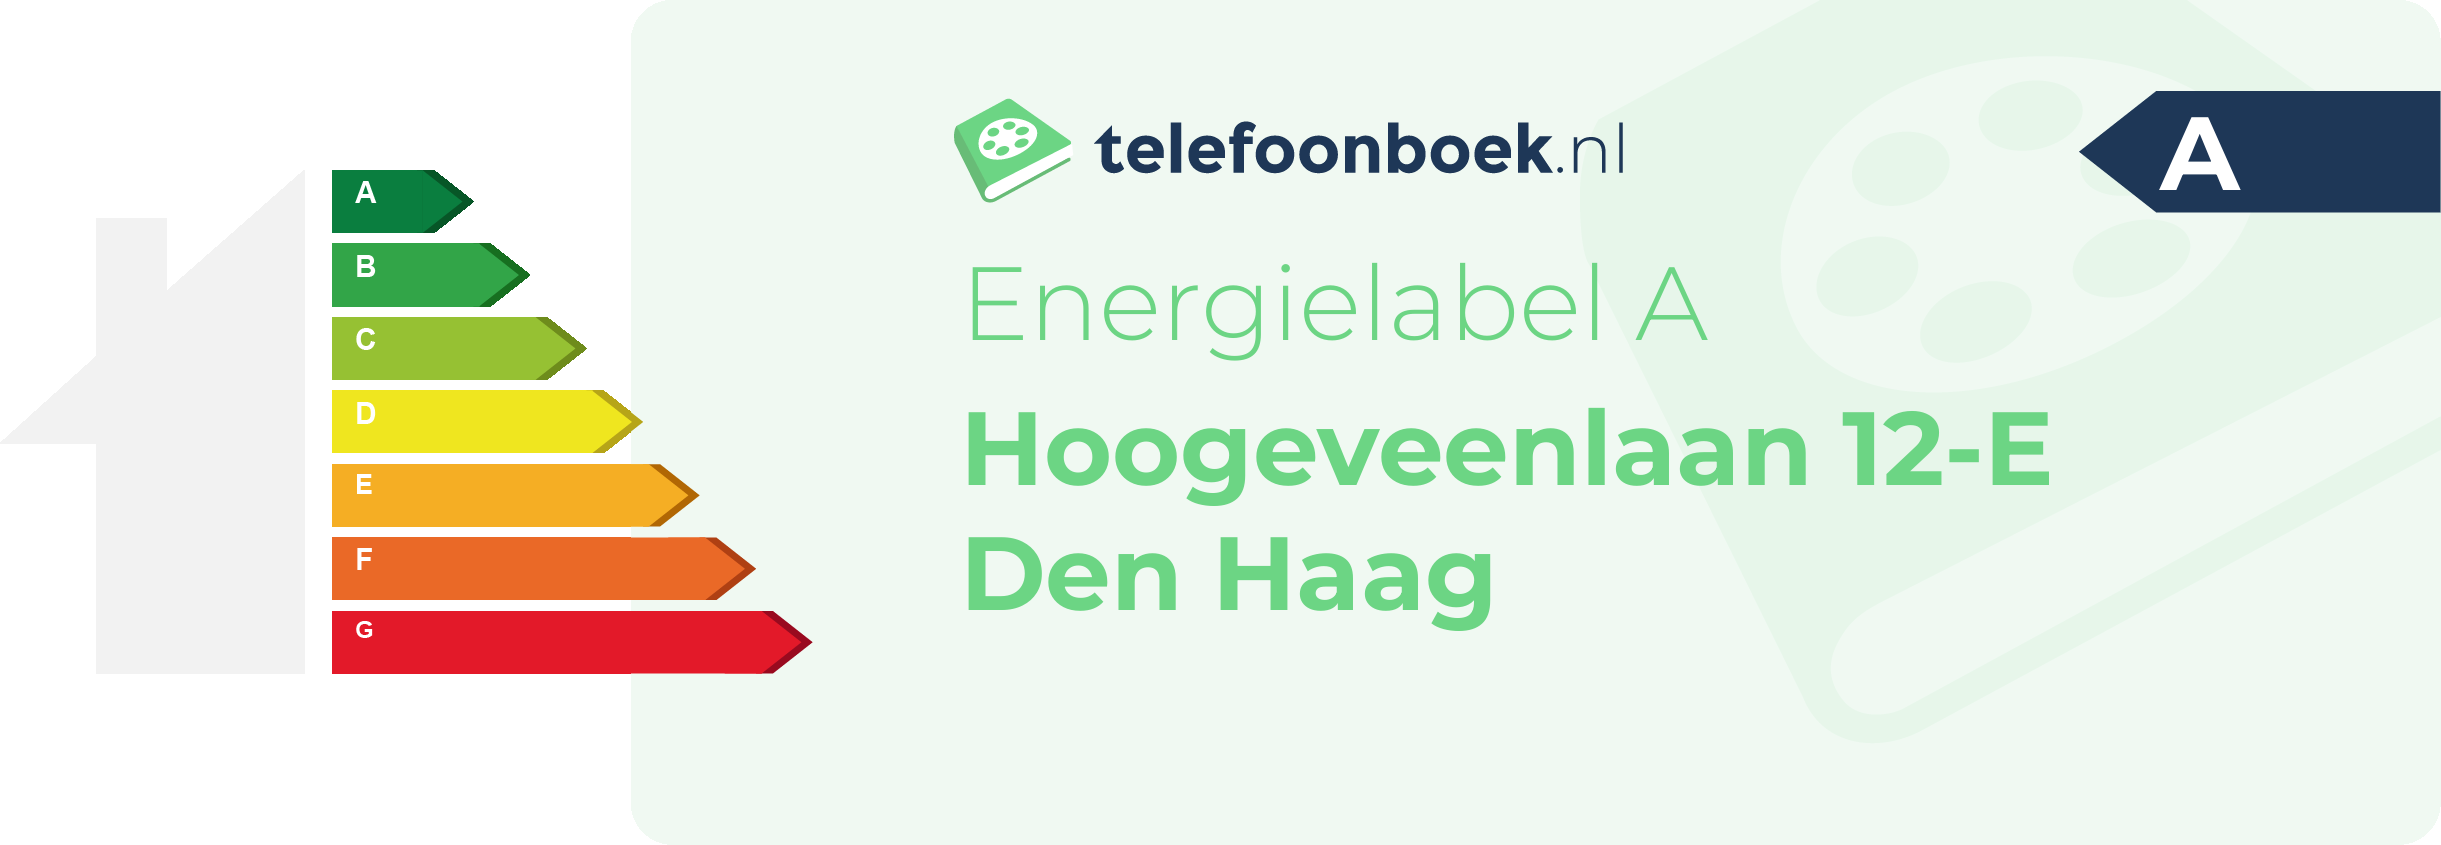 Energielabel Hoogeveenlaan 12-E Den Haag